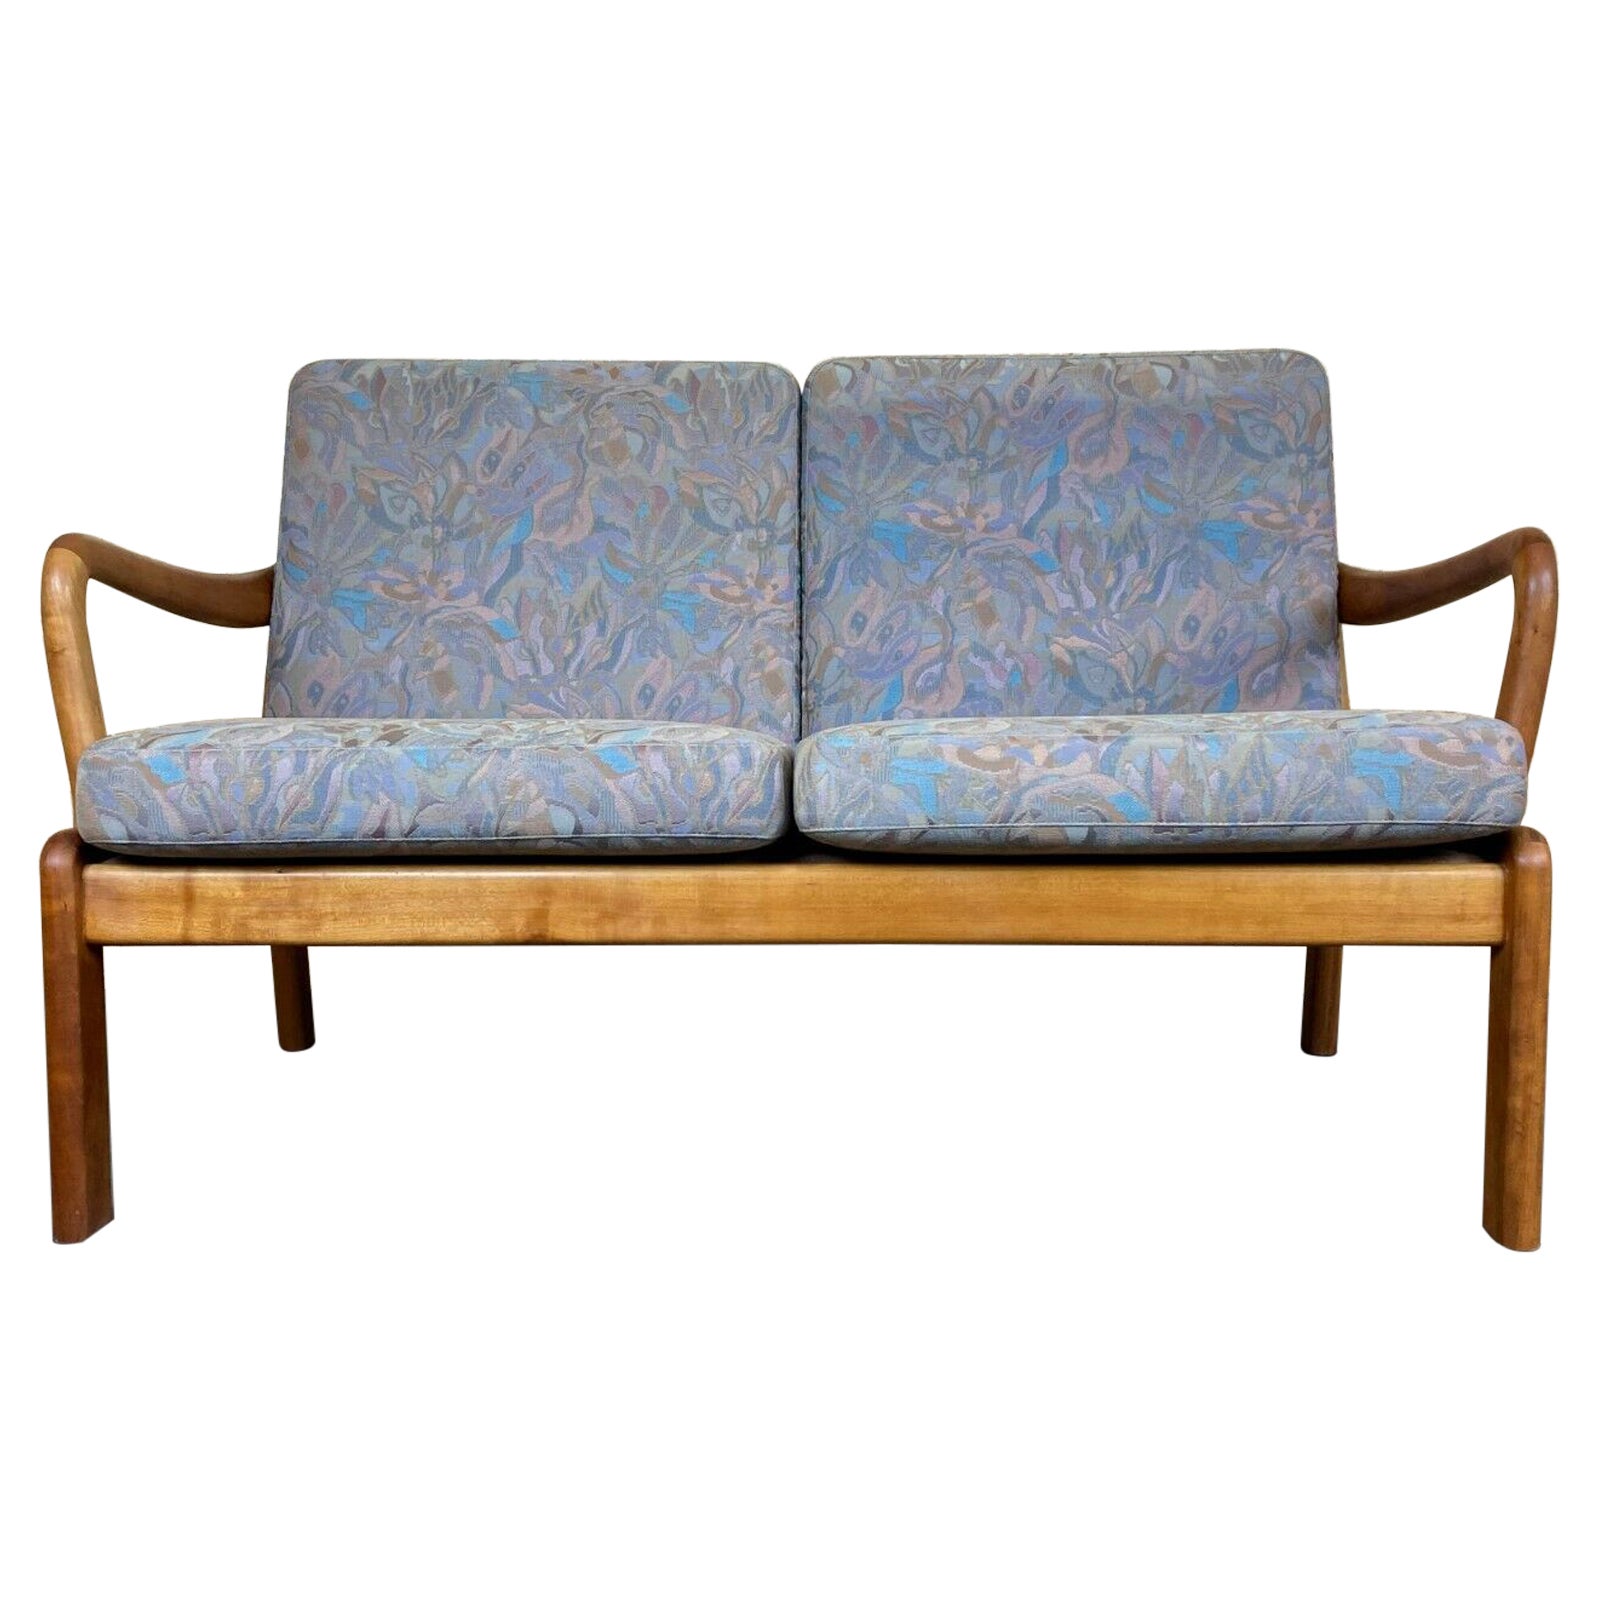 60s 70s Teak Sofa Couch L. Olsen & Søn Danish Modern Denmark Design For Sale